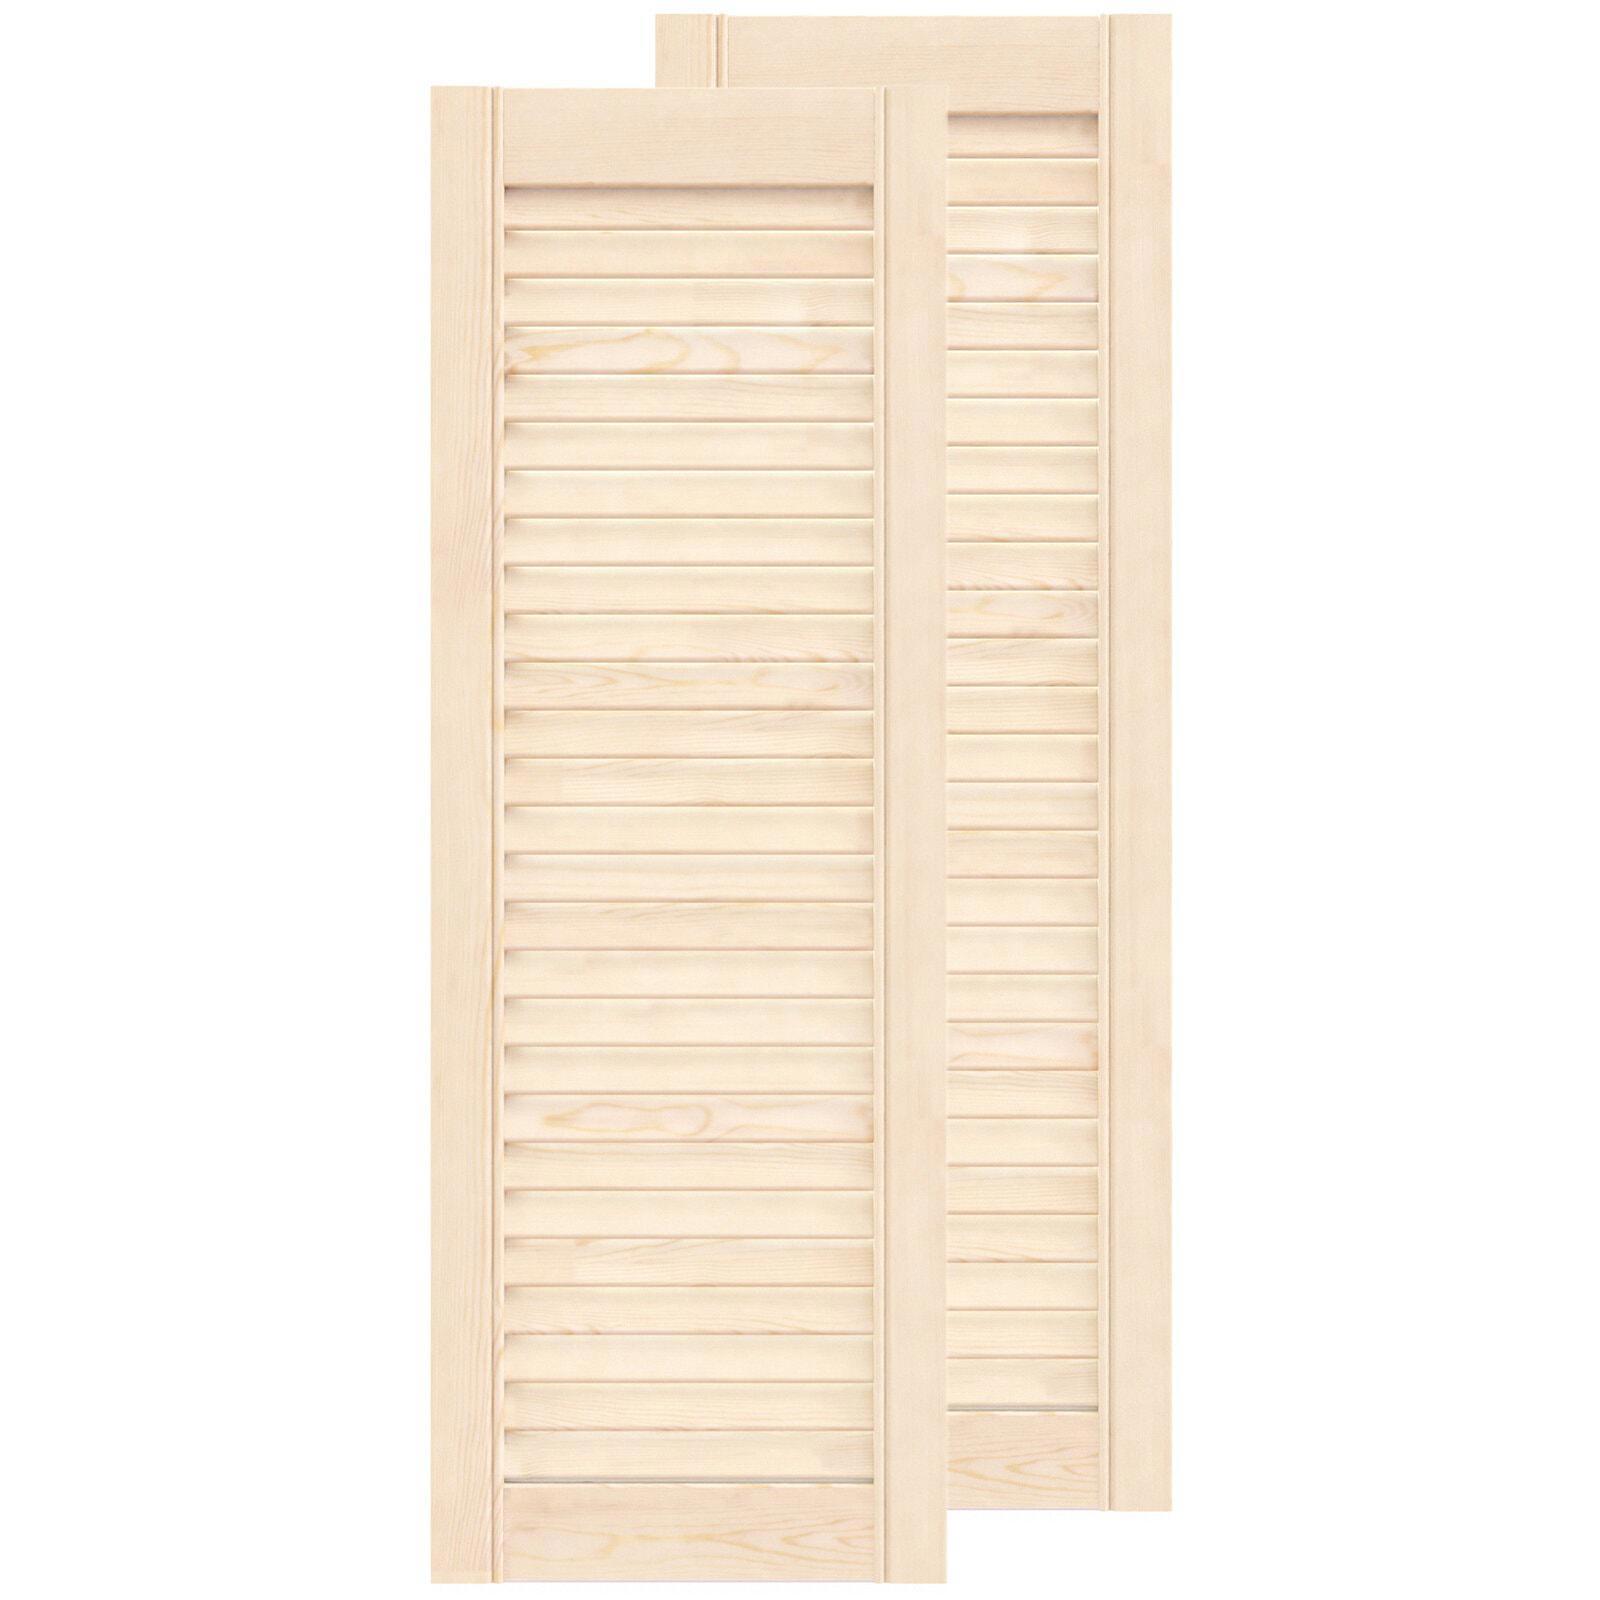 Двери жалюзийные деревянные Timber&Style 850x294x20мм сосна Экстра .